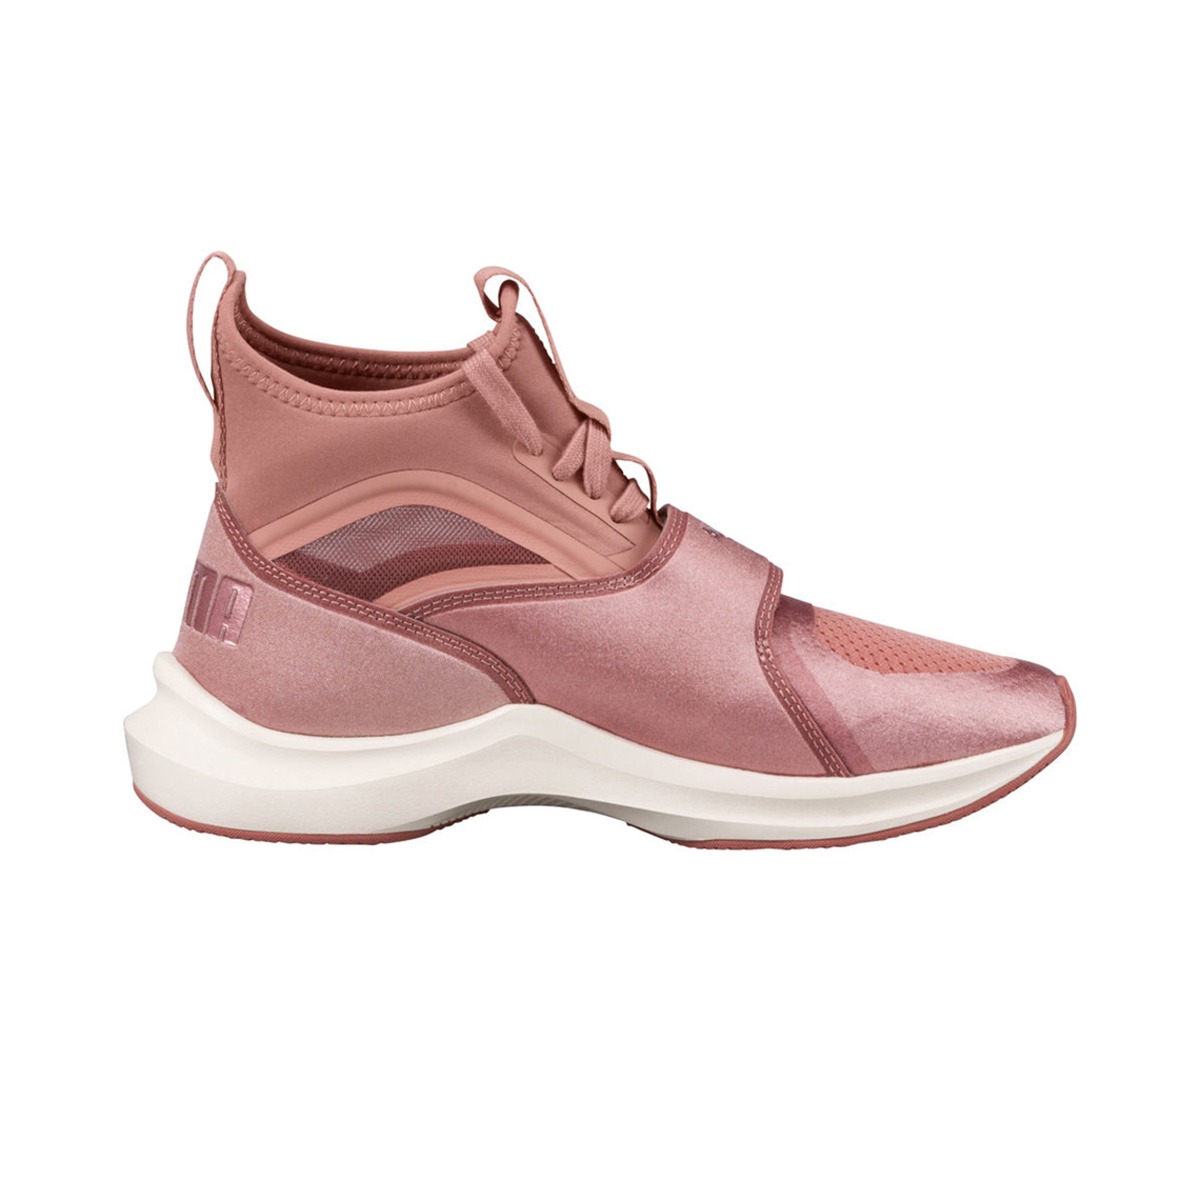 botas puma mujer - Tienda Online de Zapatos, Ropa y Complementos de marca